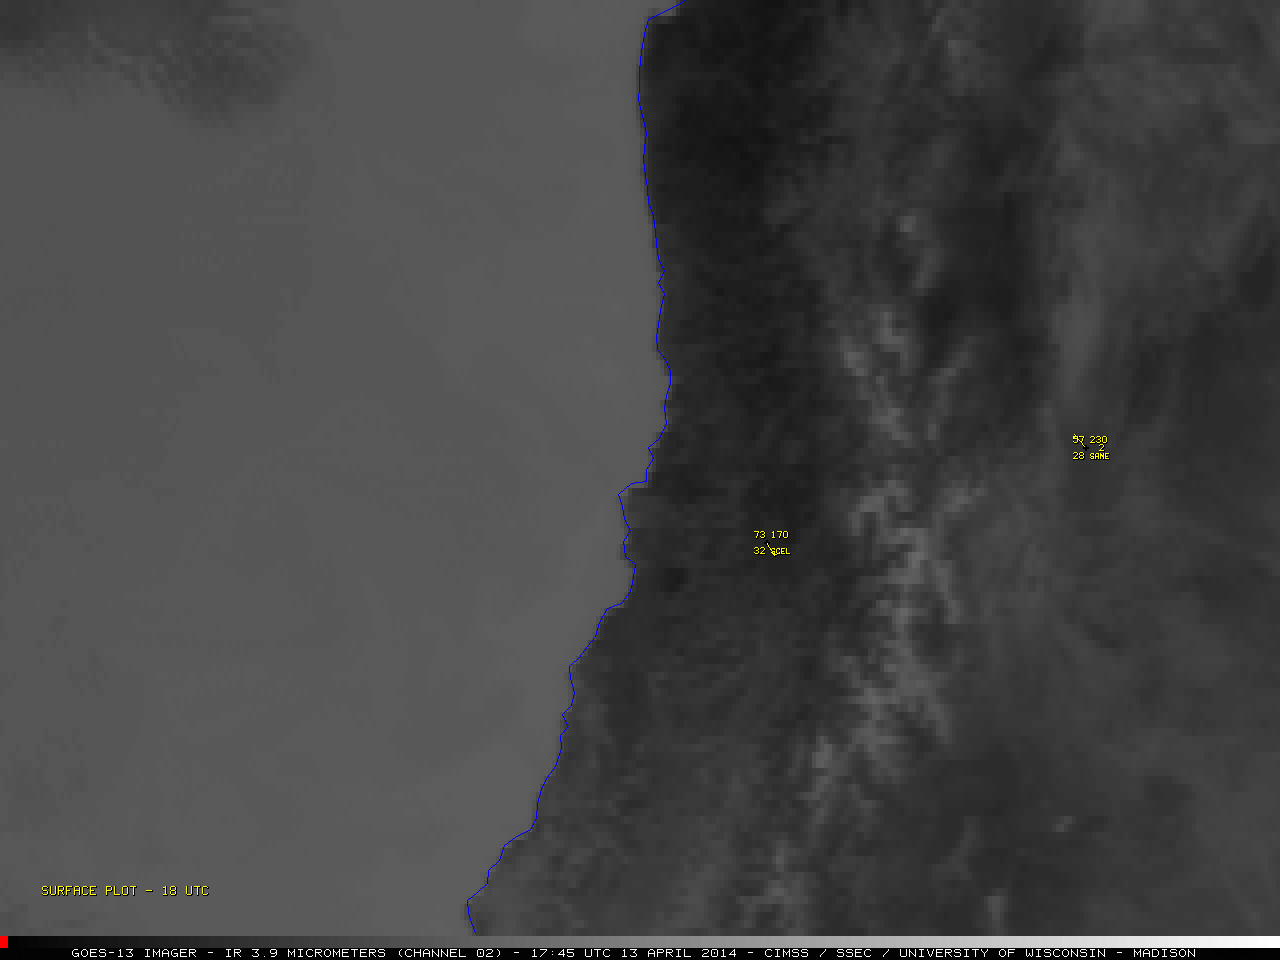 GOES-13 3.9 Âµm shortwave IR channel images